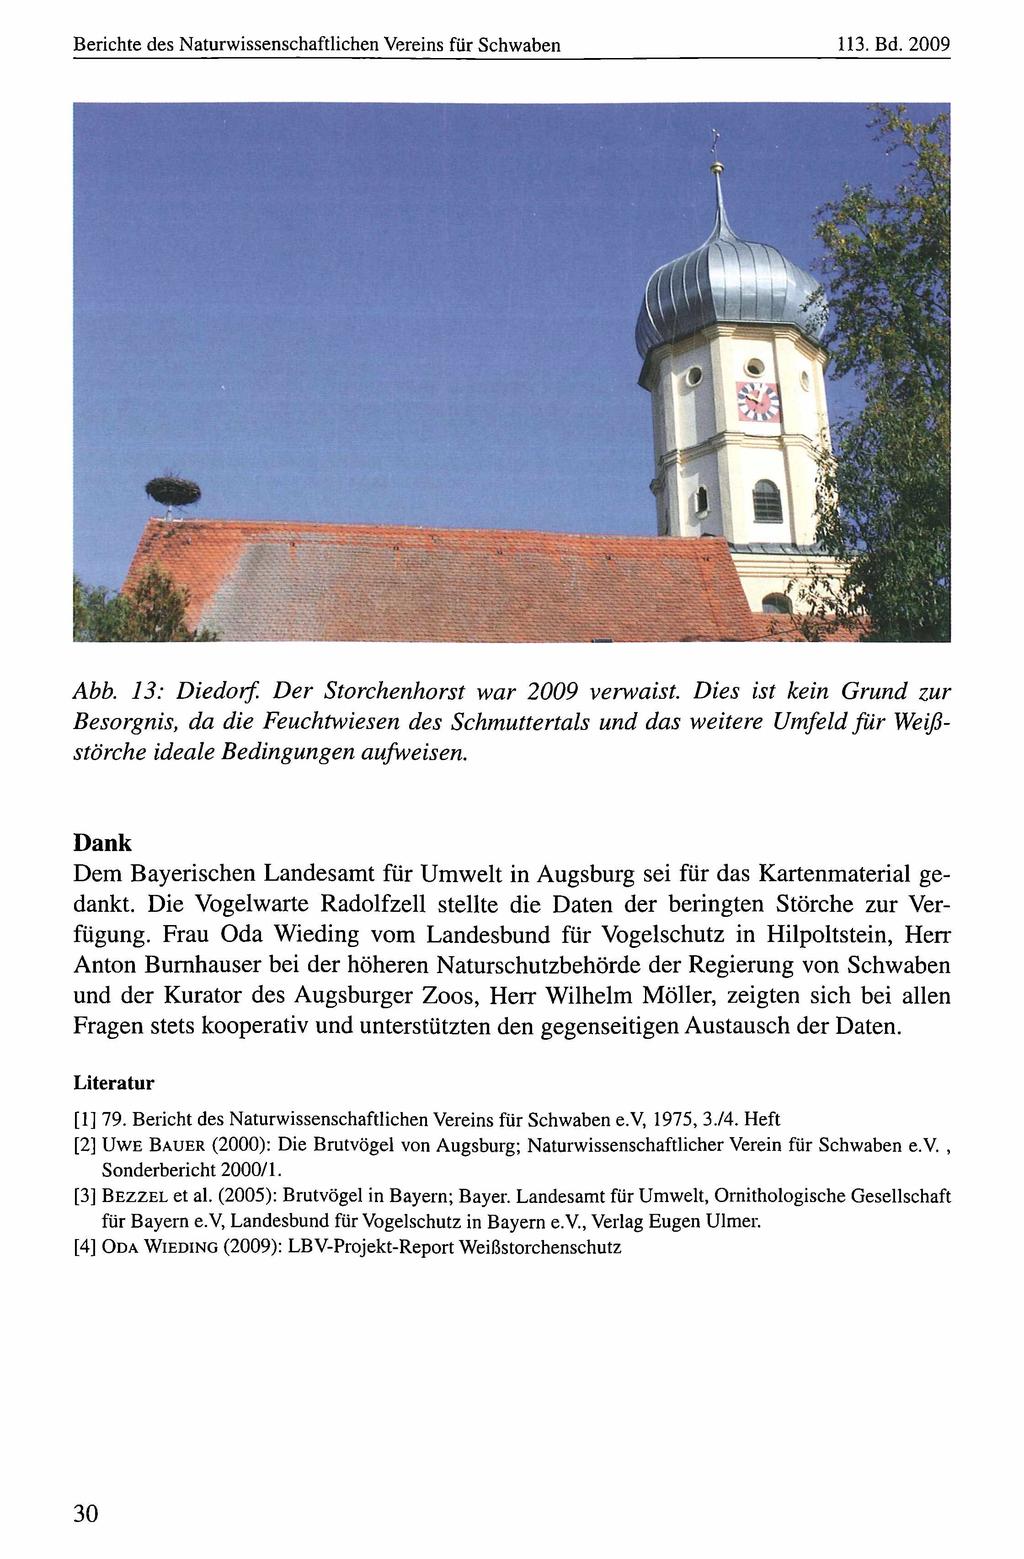 Berichte des Naturwissenschaftlichen Naturwissenschaftlicher Vereins für Schwaben, download unter www.biologiezentrum.at 113. Bd. 2009 Abb. 13: Diedorf. Der Storchenhorst war 2009 verwaist.